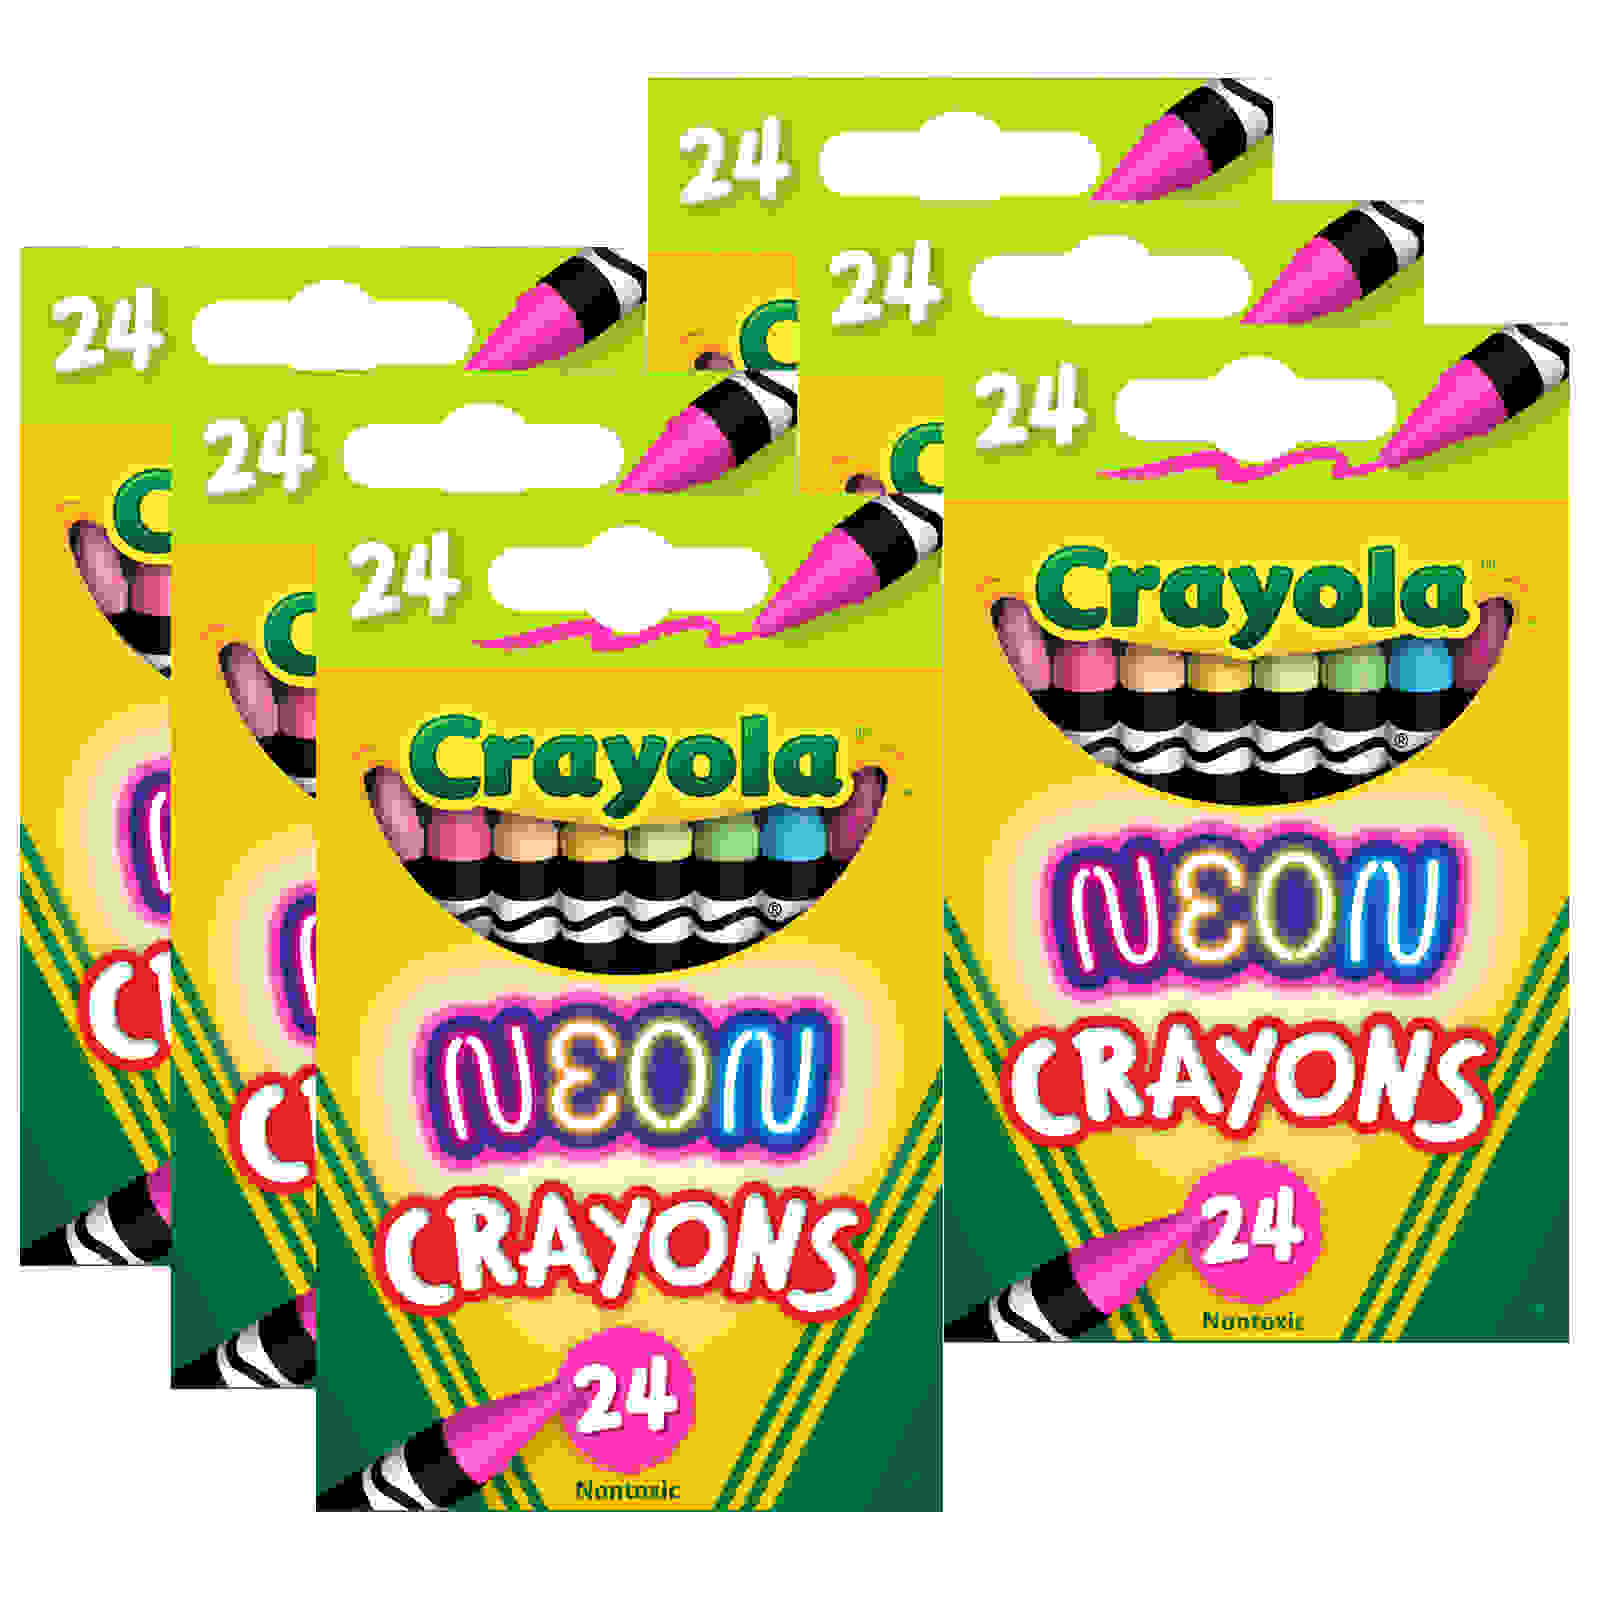 Neon Crayons, 24 Per Pack, 6 Packs